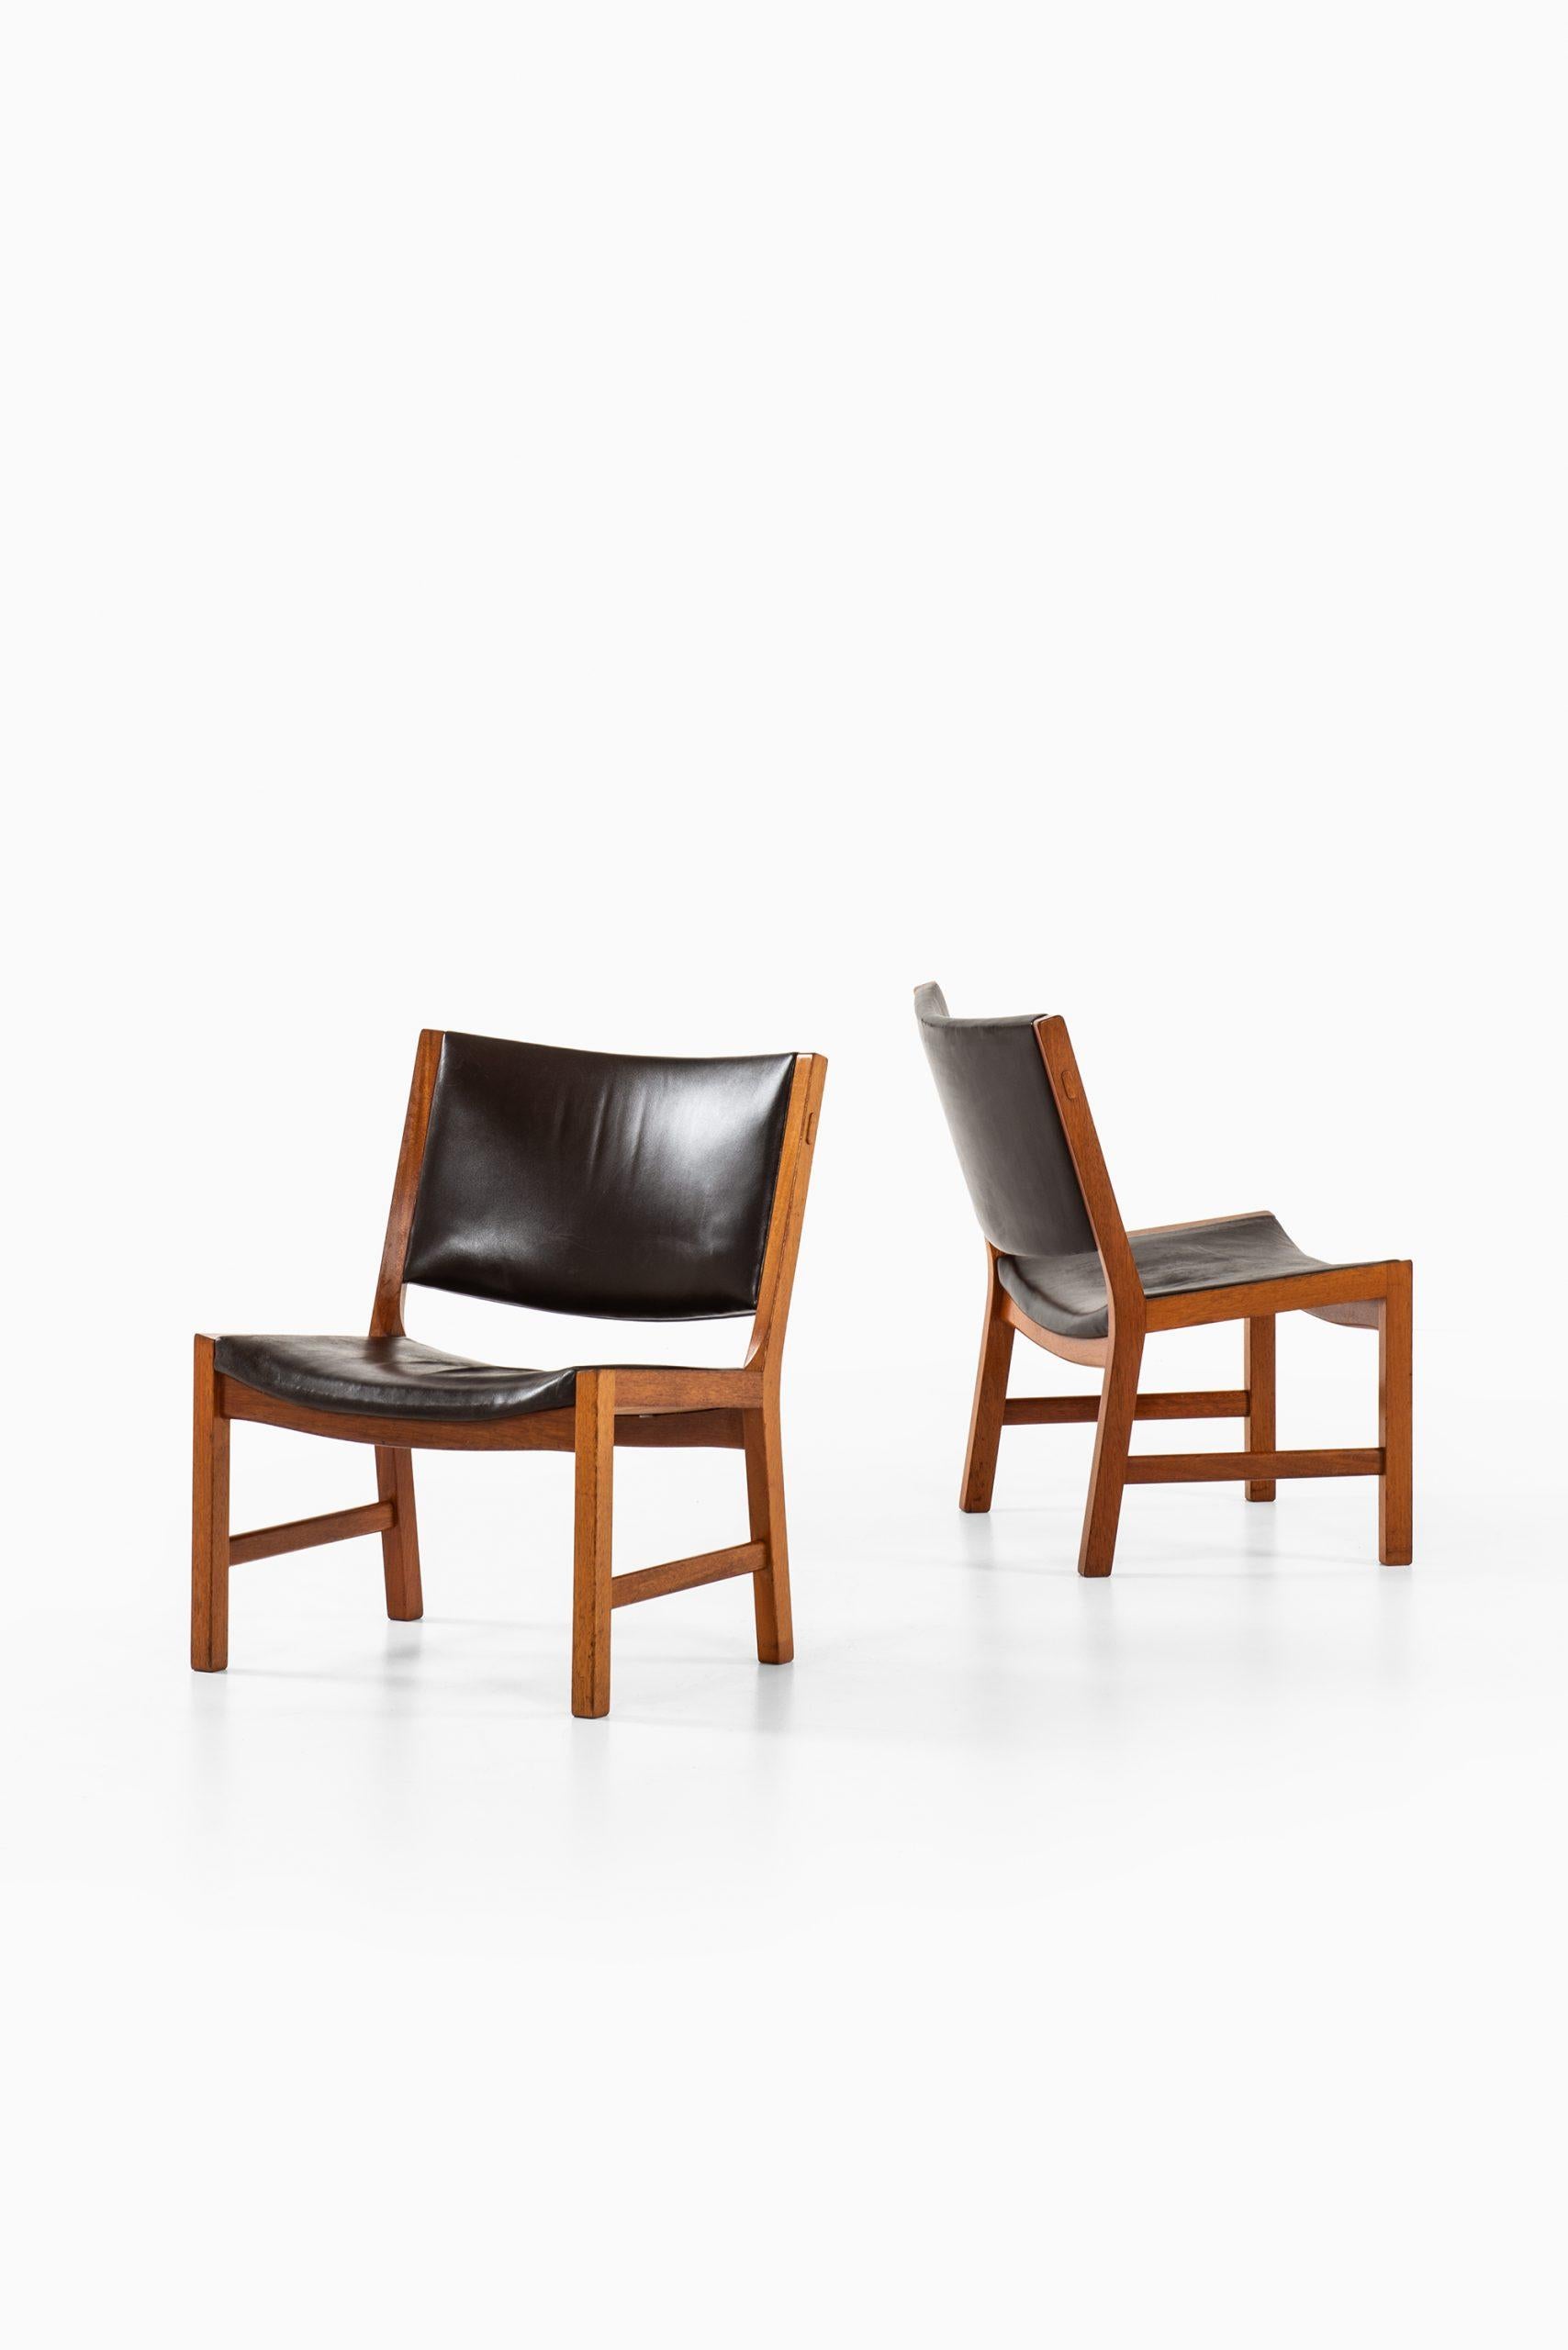 Rare paire de fauteuils modèle JH54 conçus par Hans Wegner. Produit par l'ébéniste Johannes Hansen au Danemark.